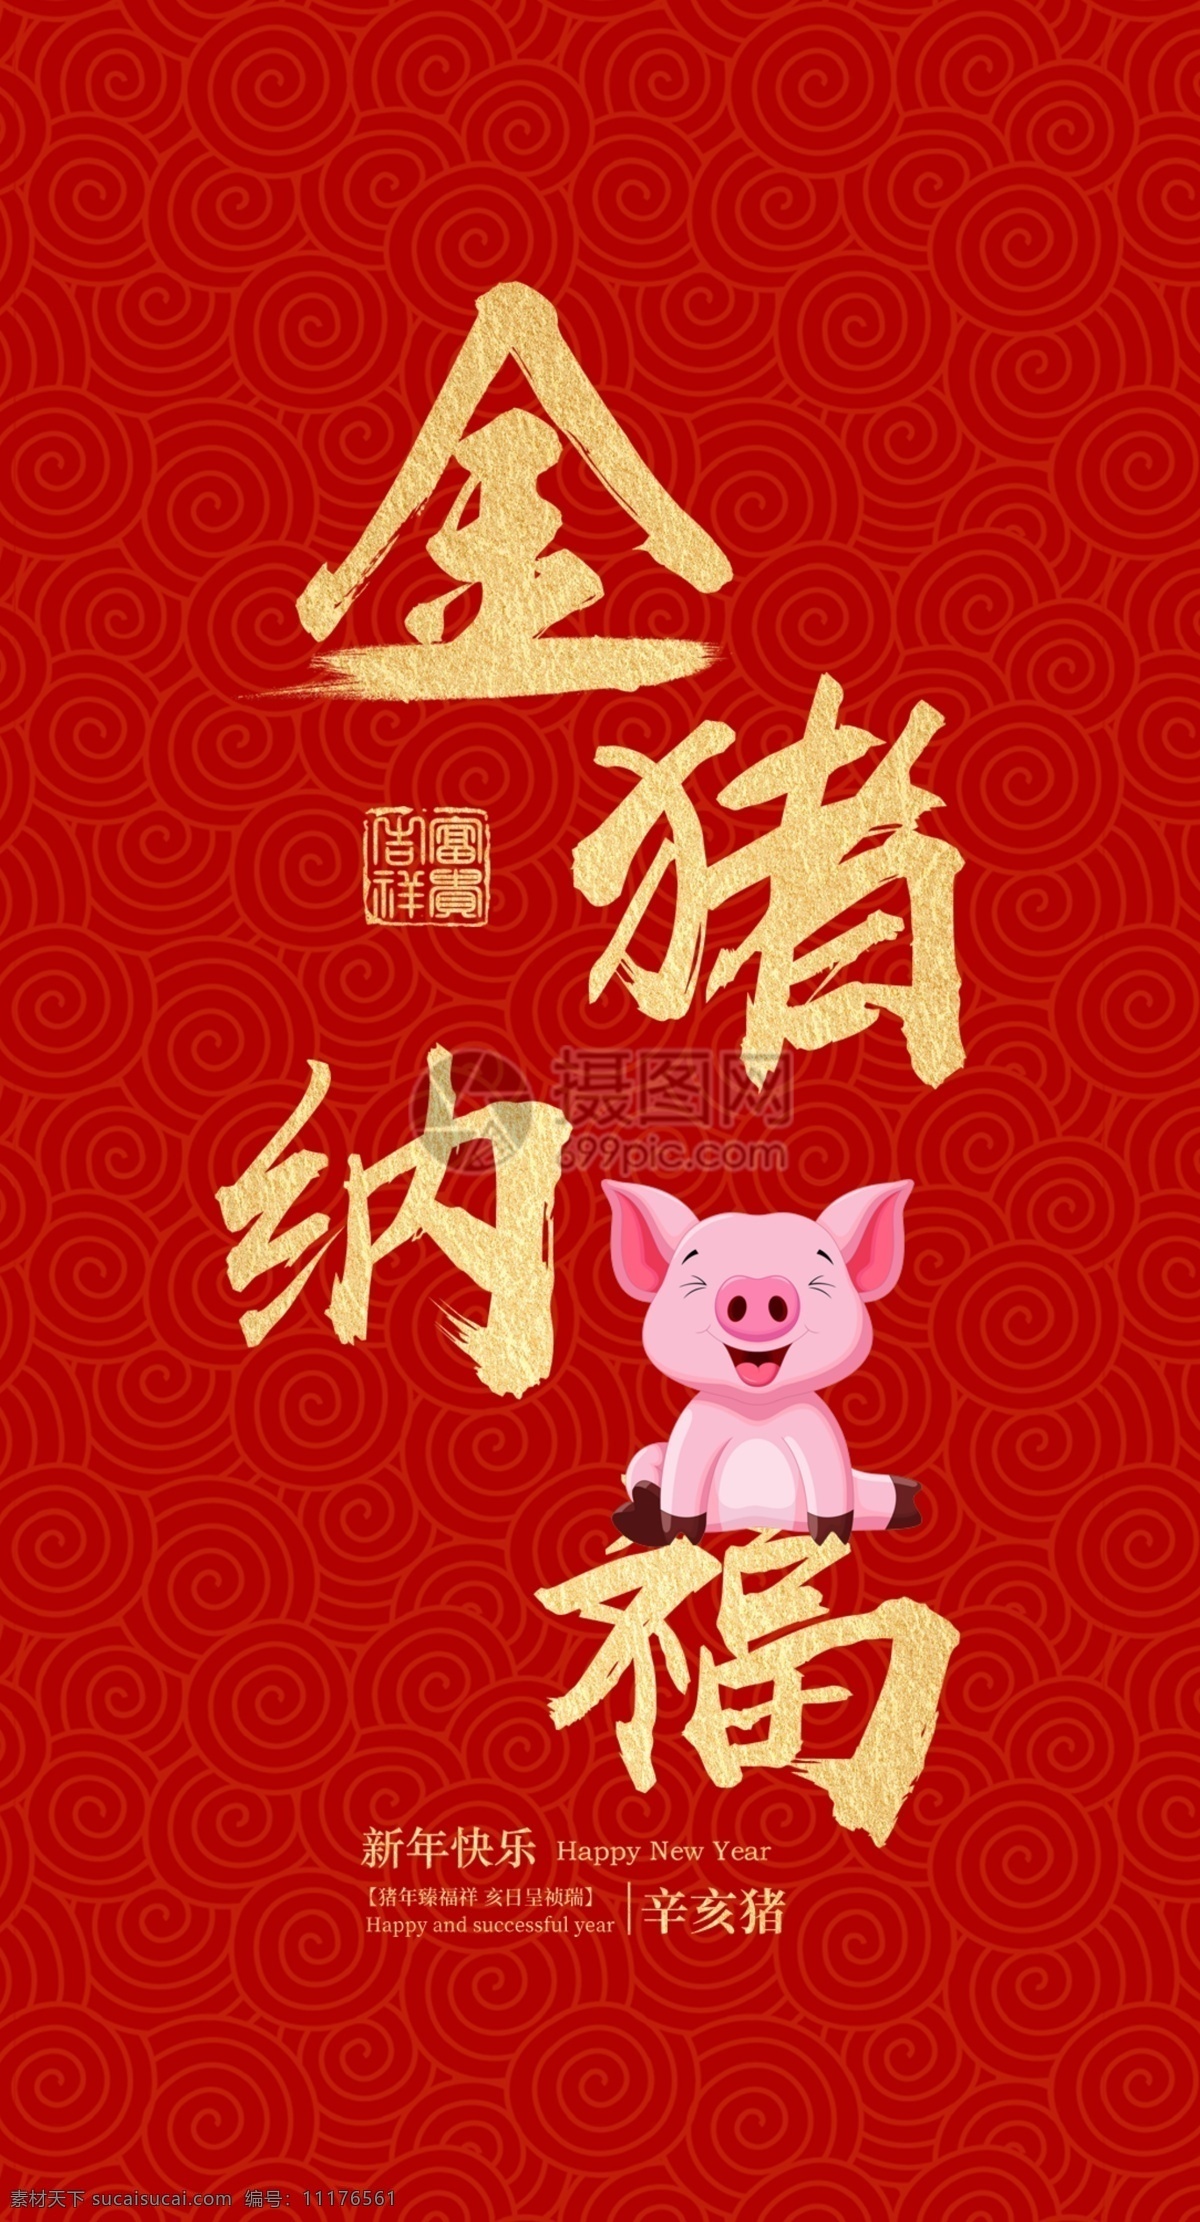 猪年 新春 祝福 红包 新年 传统 红色 祝贺 猪年红包 红包设计 新年红包 新春红包